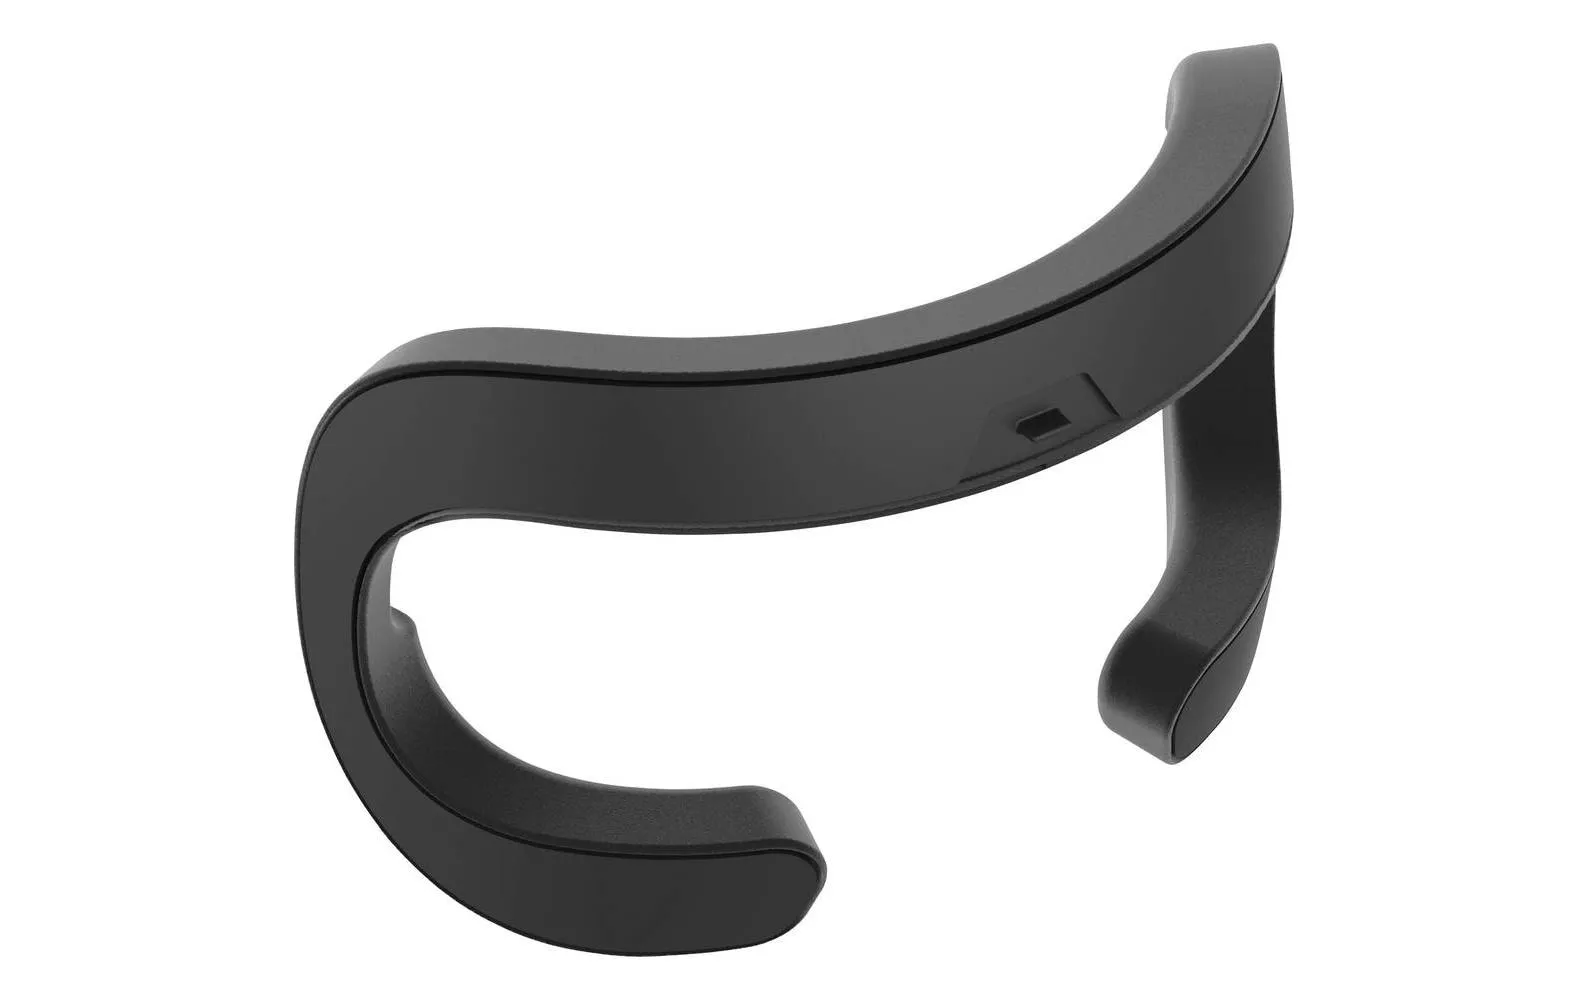 Coussinets faciaux HTC Vive Pro cuir synthétique